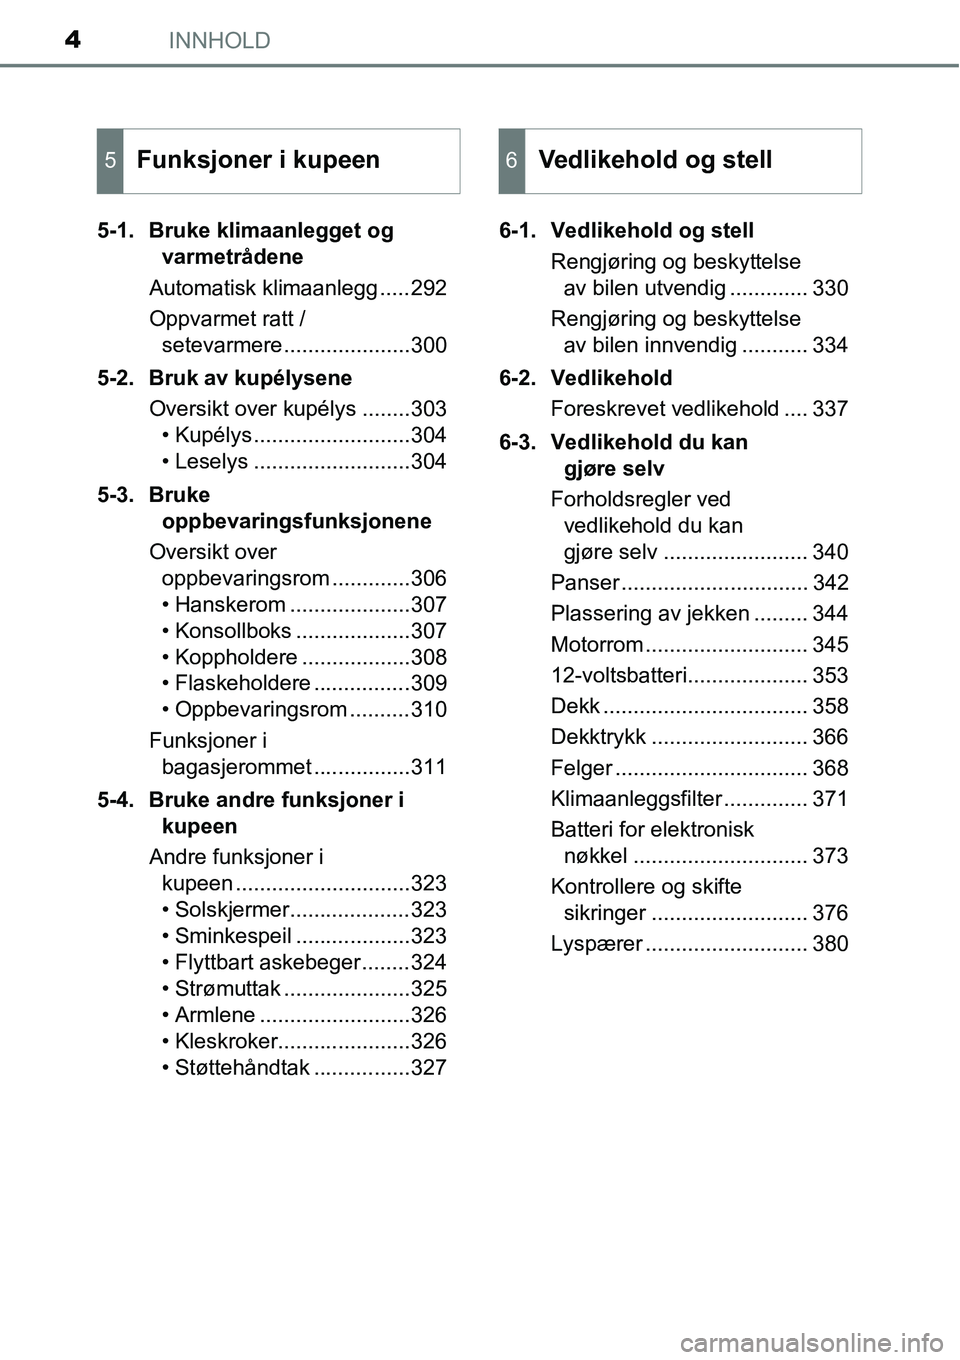 TOYOTA RAV4 2015  Instruksjoner for bruk (in Norwegian) INNHOLD4
5-1. Bruke klimaanlegget og 
varmetrådene
Automatisk klimaanlegg .....292
Oppvarmet ratt / 
setevarmere.....................300
5-2. Bruk av kupélysene
Oversikt over kupélys ........303
�